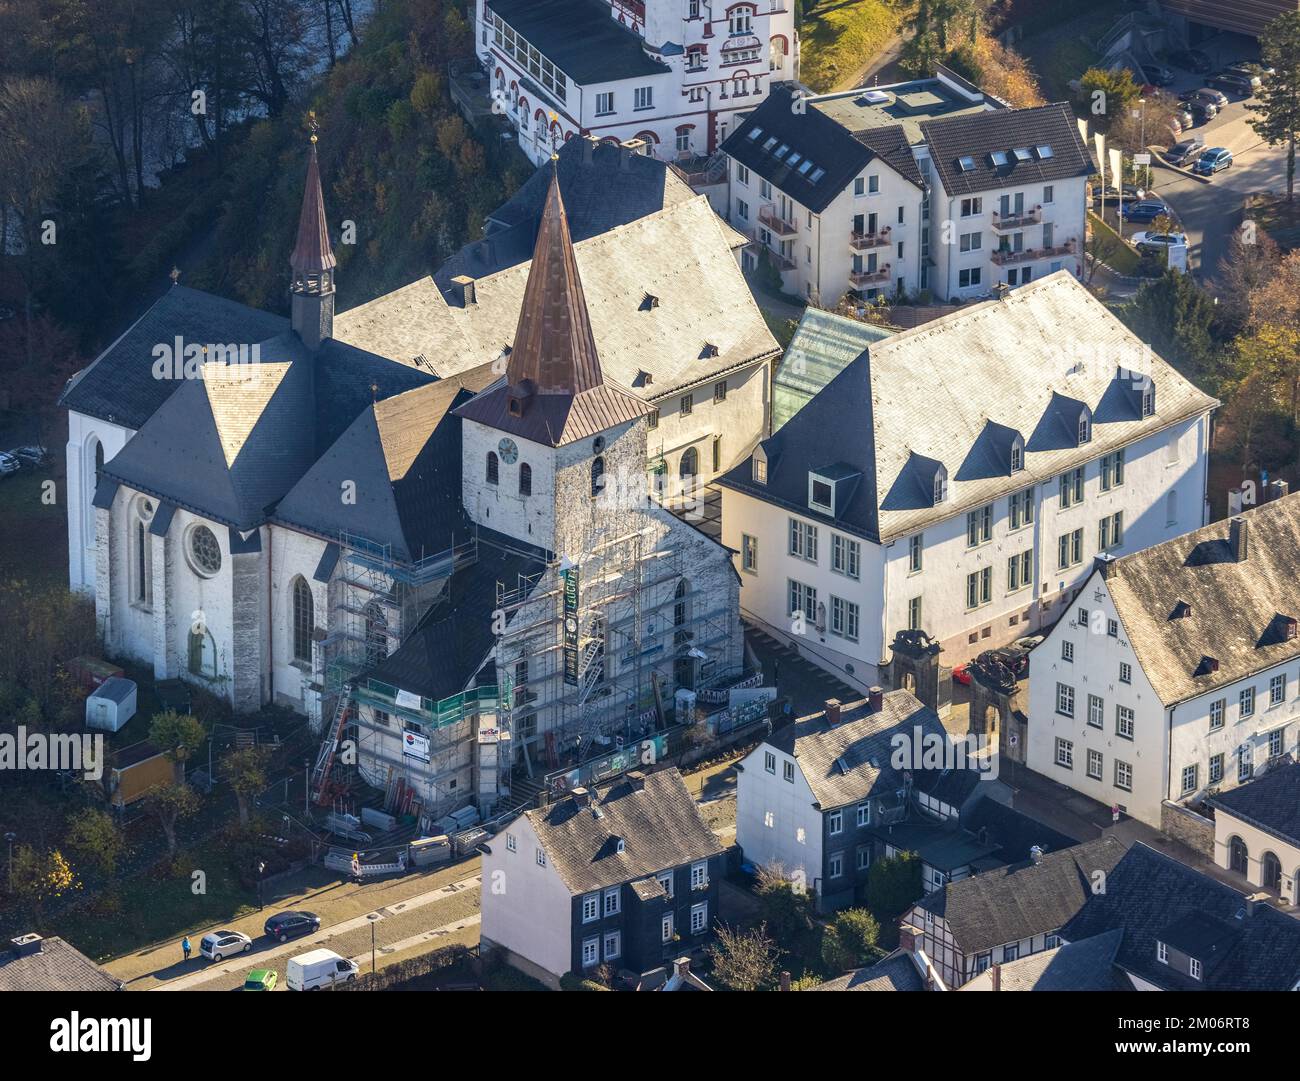 Luftbild, Renovierung der Propsteikirche St. Laurentius in Arnsberg, Sauerland, Nordrhein-Westfalen, Deutschland Stock Photo